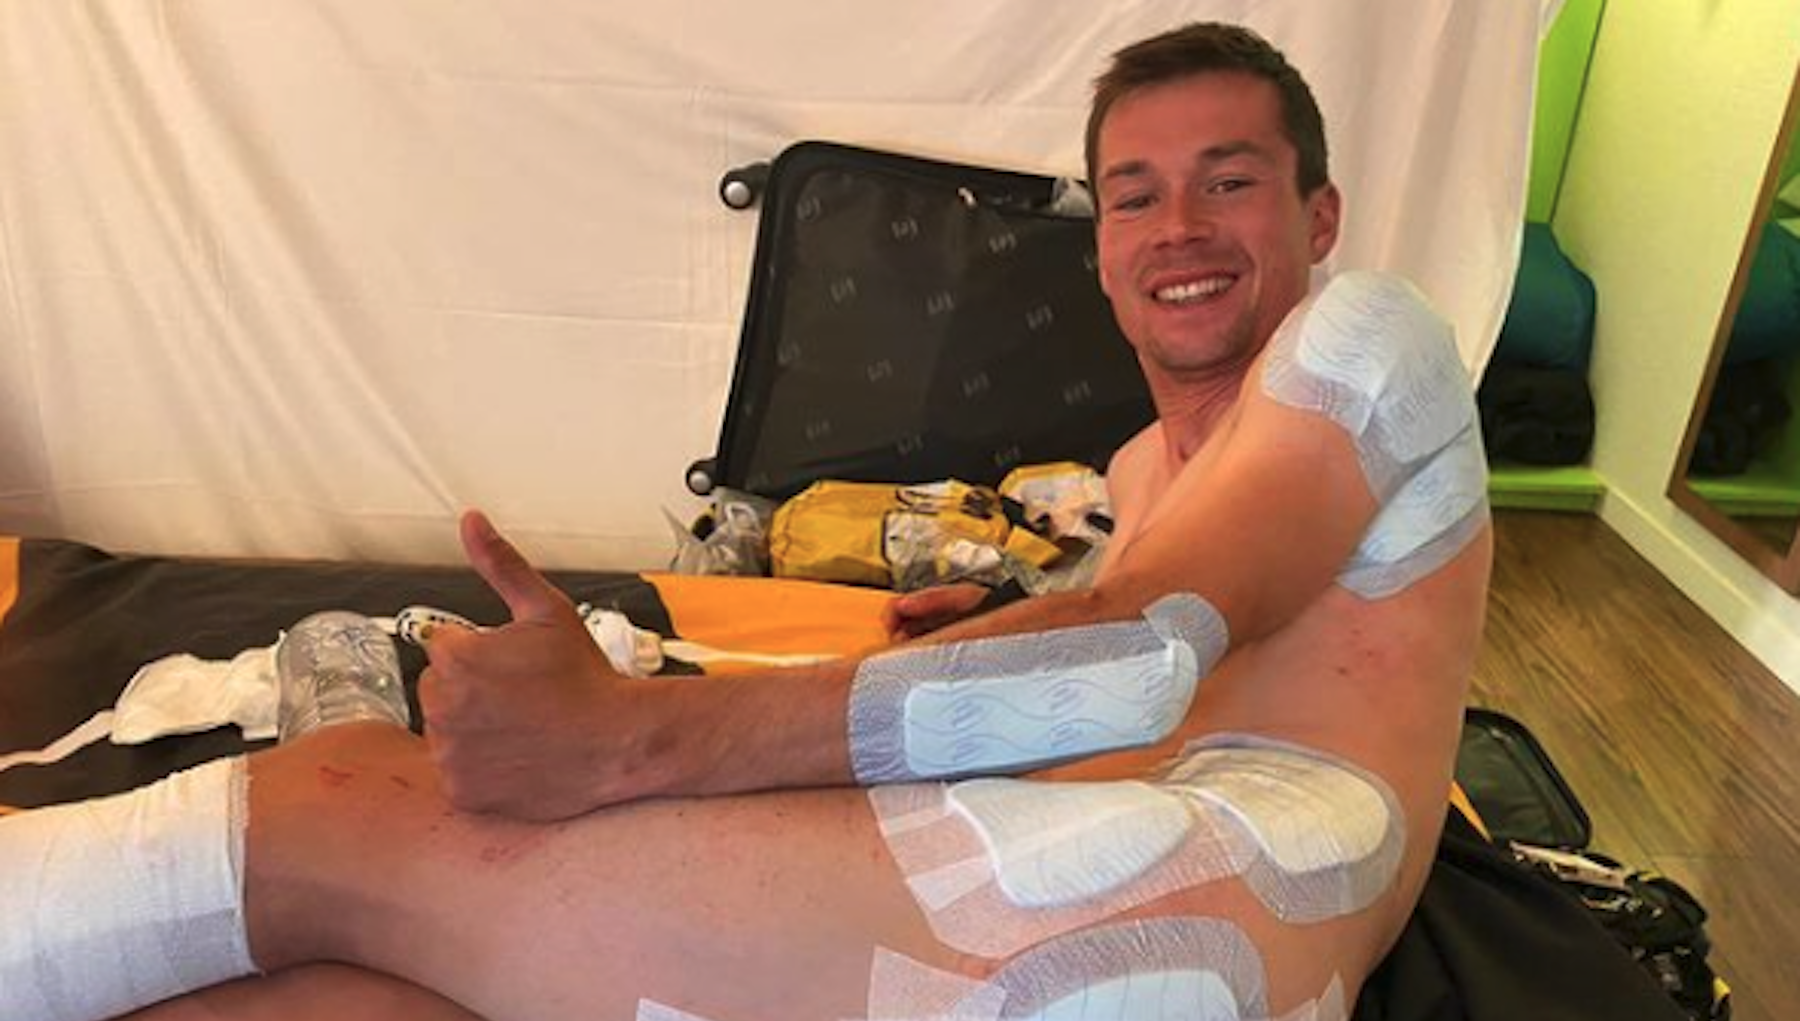 Primož Roglič momificado sigue en carrera después del accidente del Tour de Francia